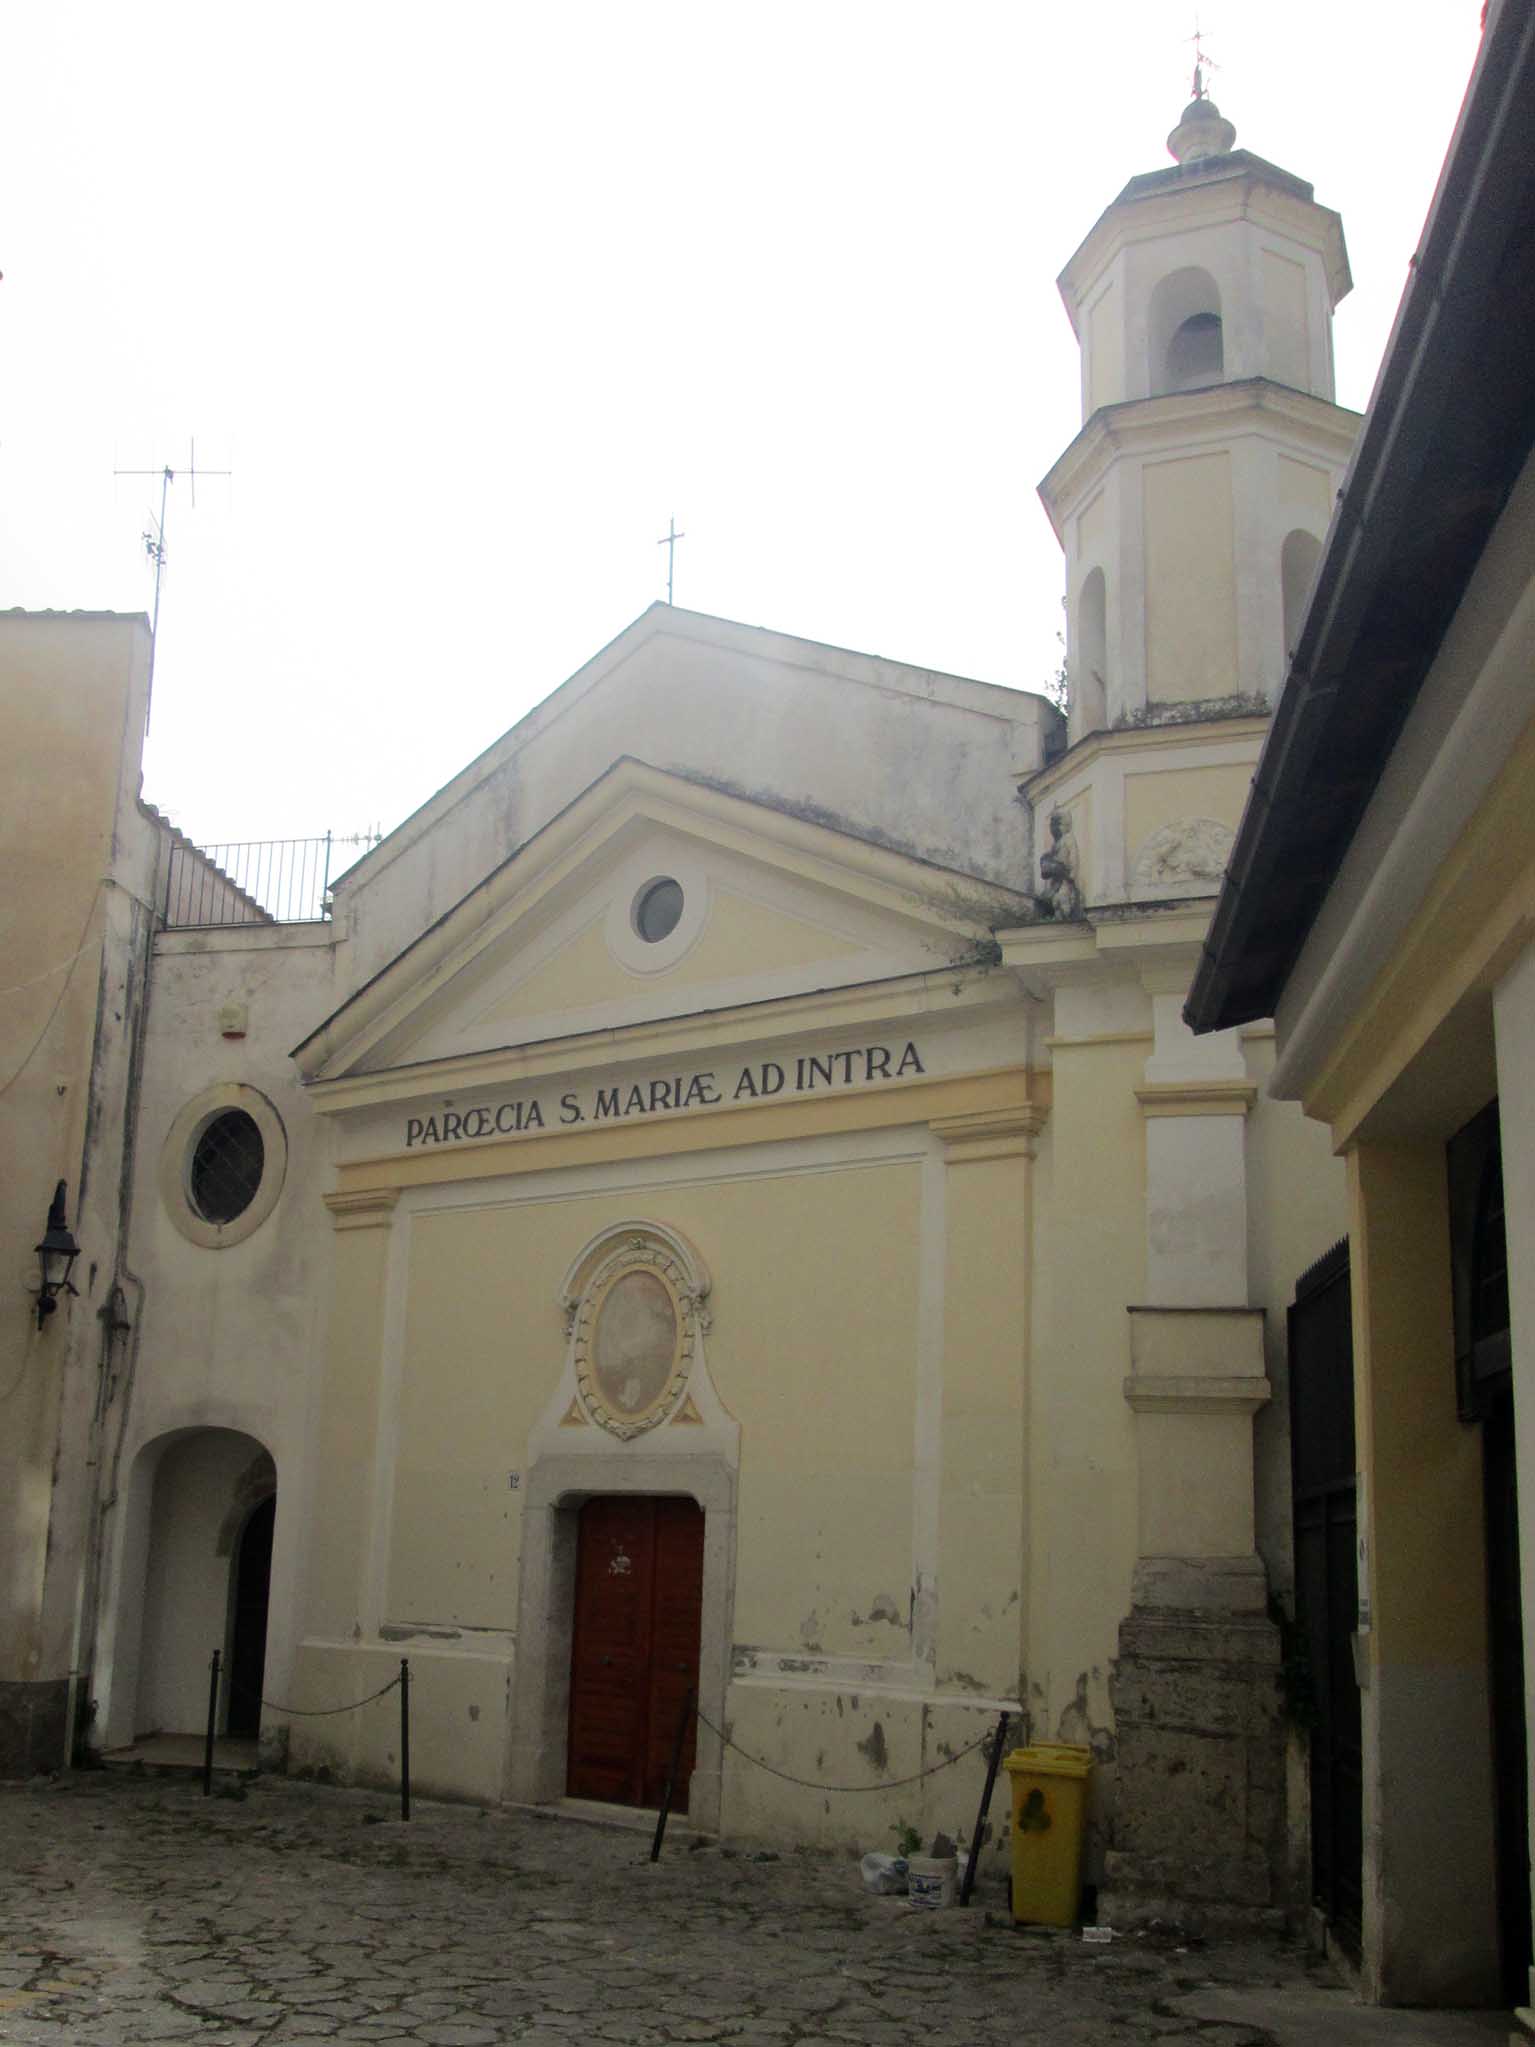 Chiesa di S.Maria ad intra (chiesa) - Eboli (SA) 